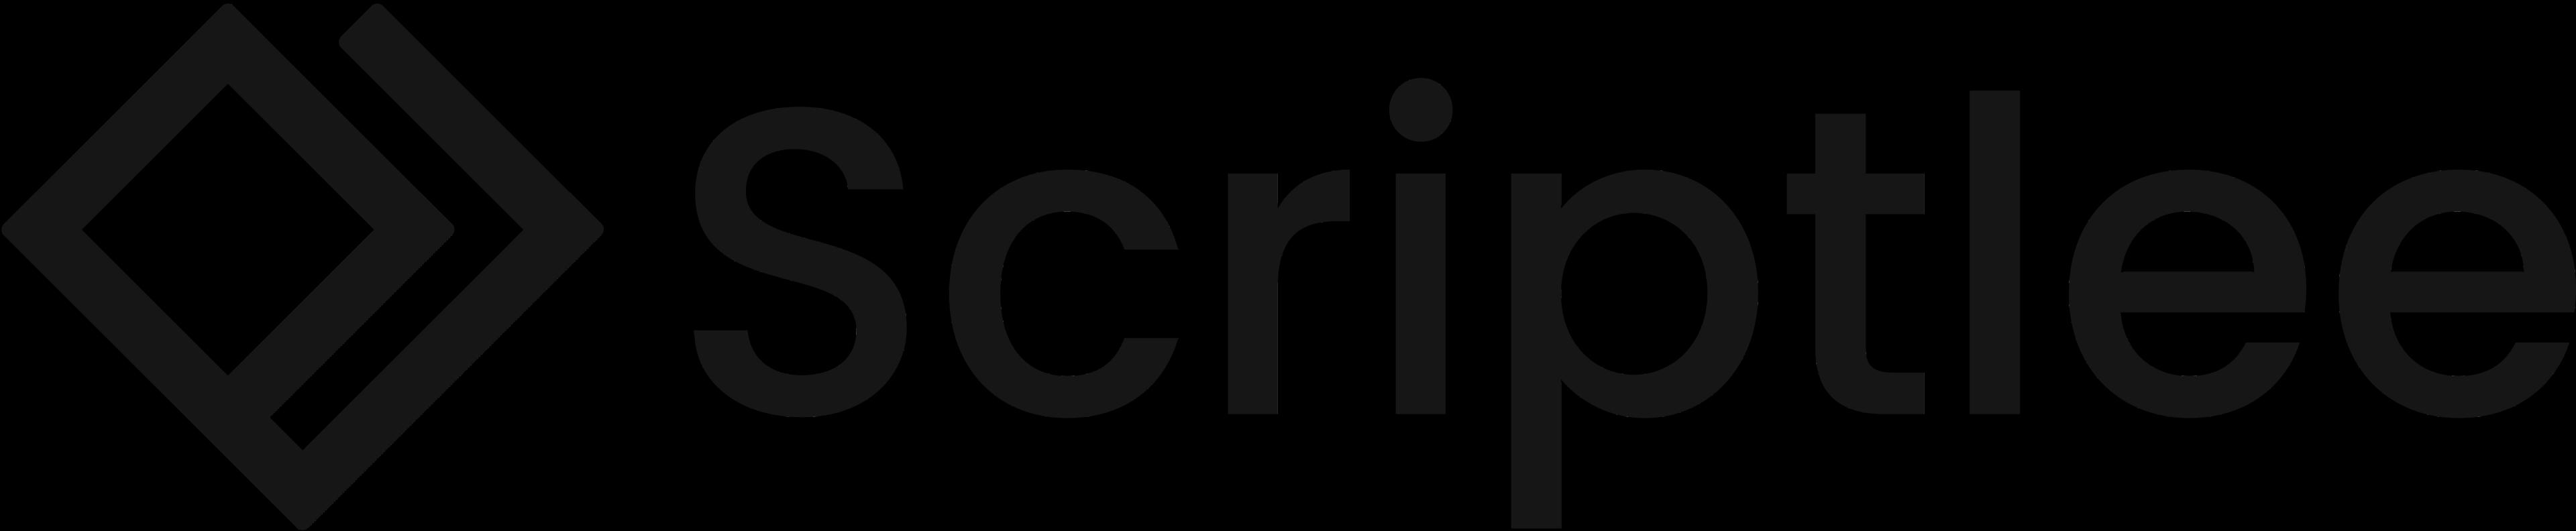 Scriptlee Logo